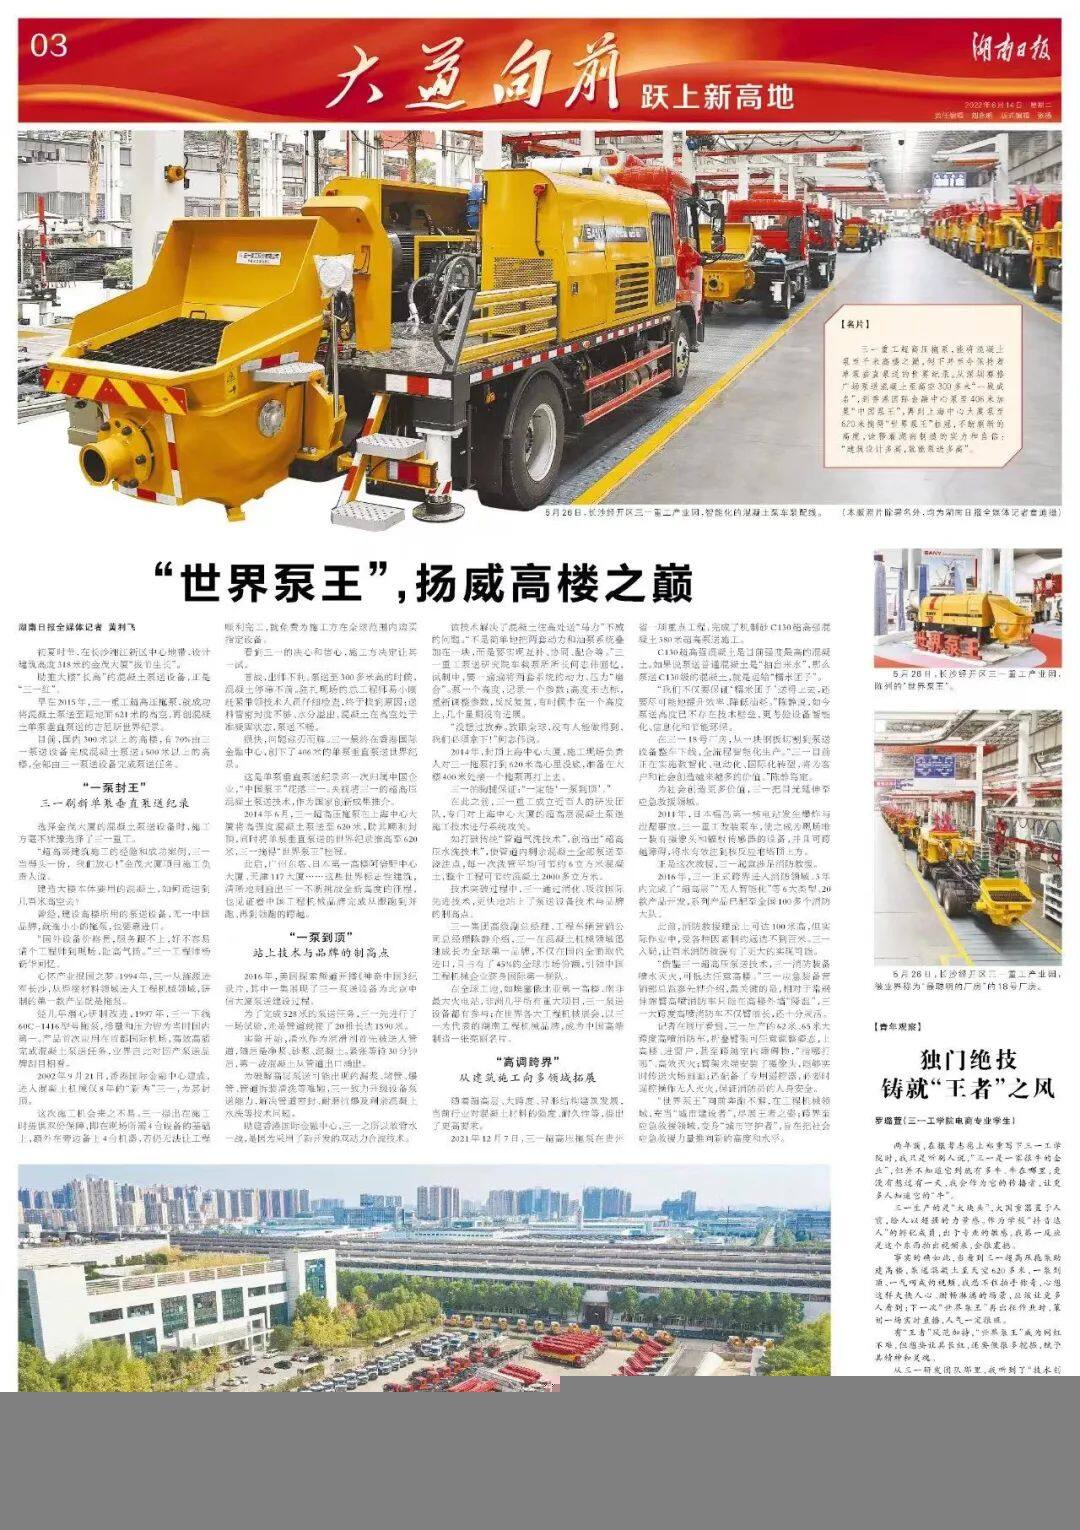 湖南日报报道三一重工超高压拖泵截图